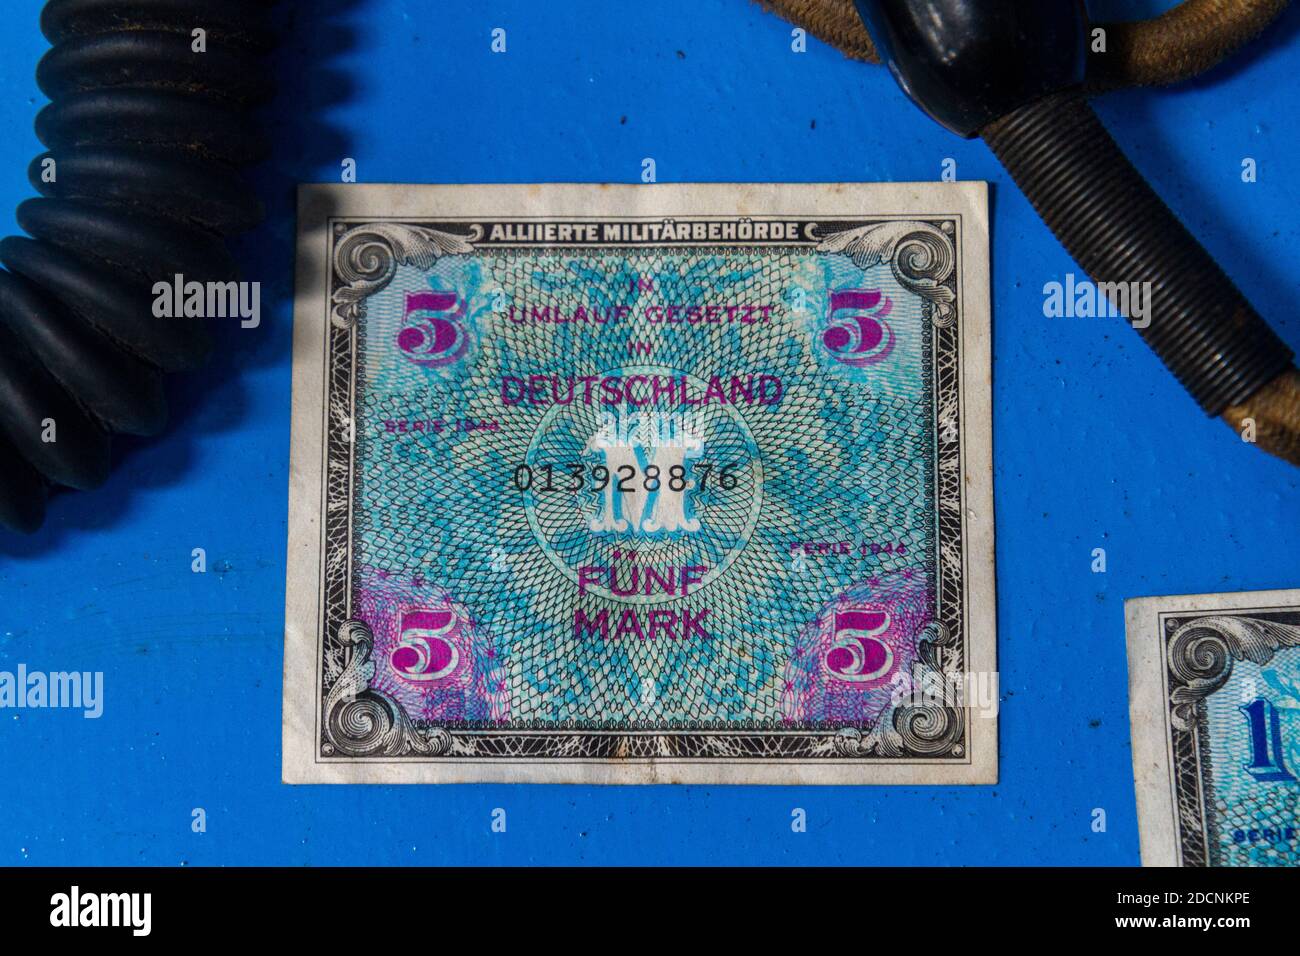 WWII, Serie 1944, contrassegno Funf della nota della banca di valuta tedesca, nota di contrassegno 5, museo dell'aviazione del Lincolnshire Heritage, Kirkby orientale, Spilsby, Lincs, Regno Unito. Foto Stock